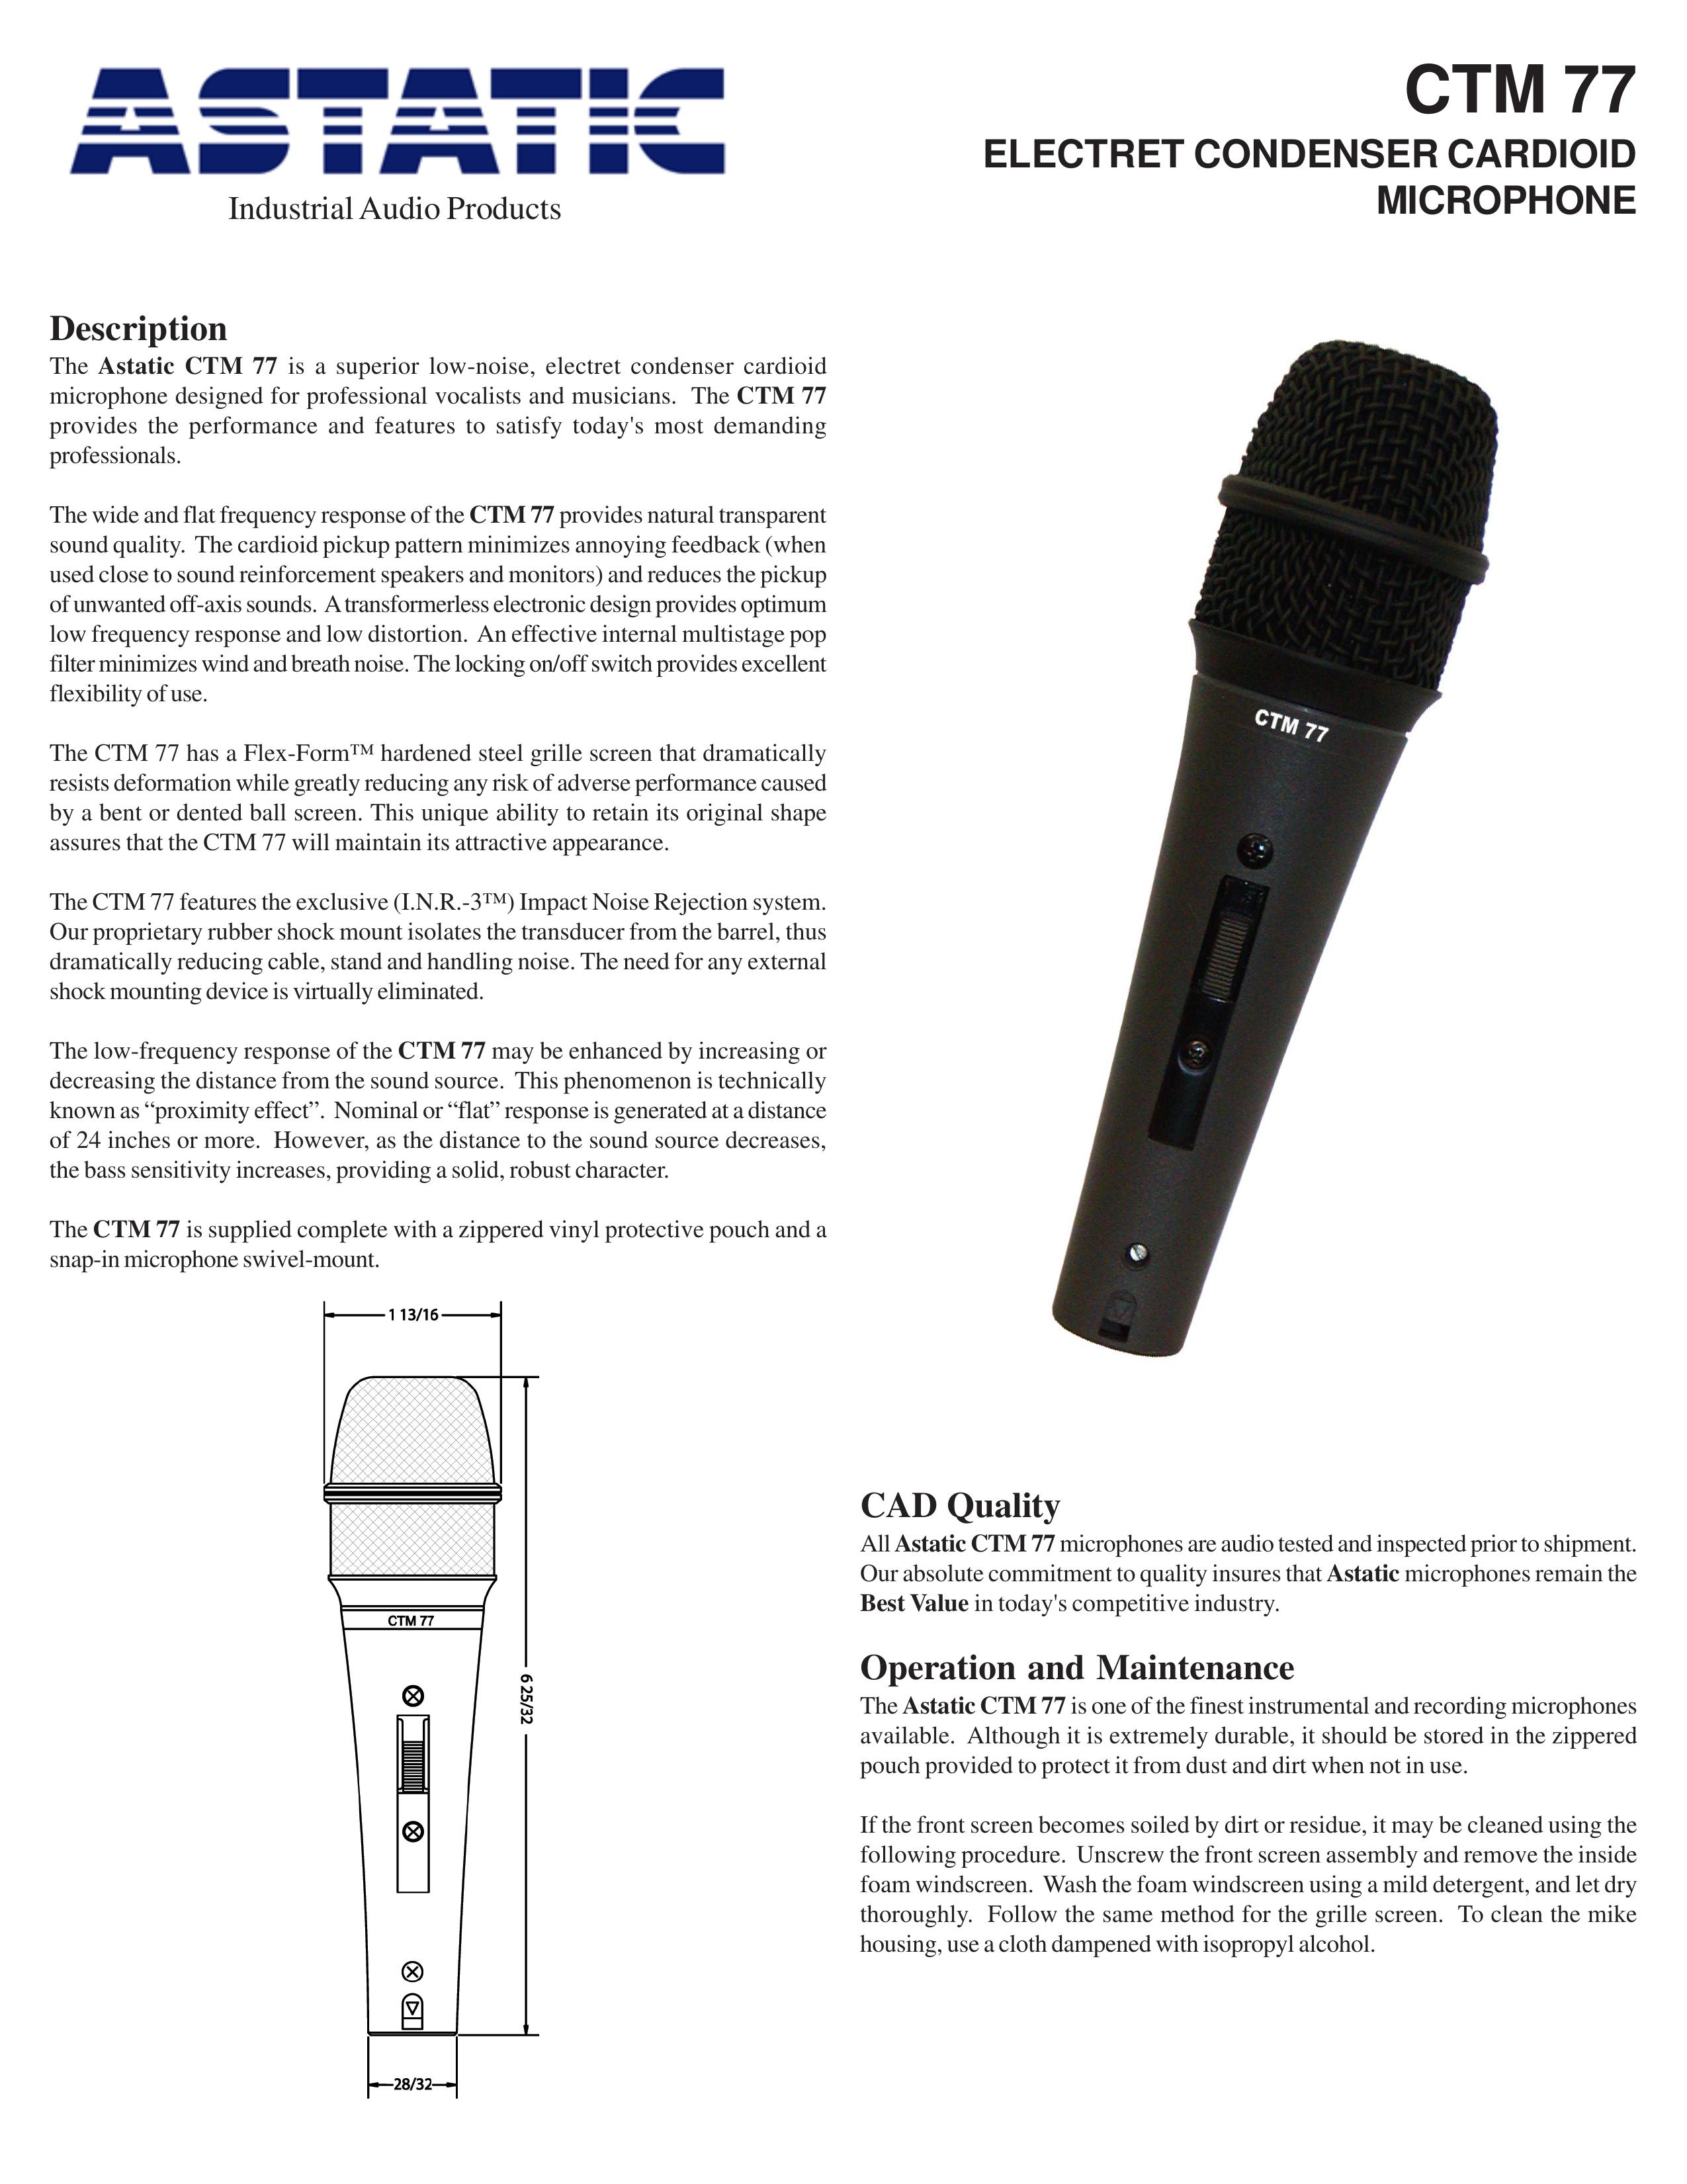 Astatic CTM 77 Microphone User Manual